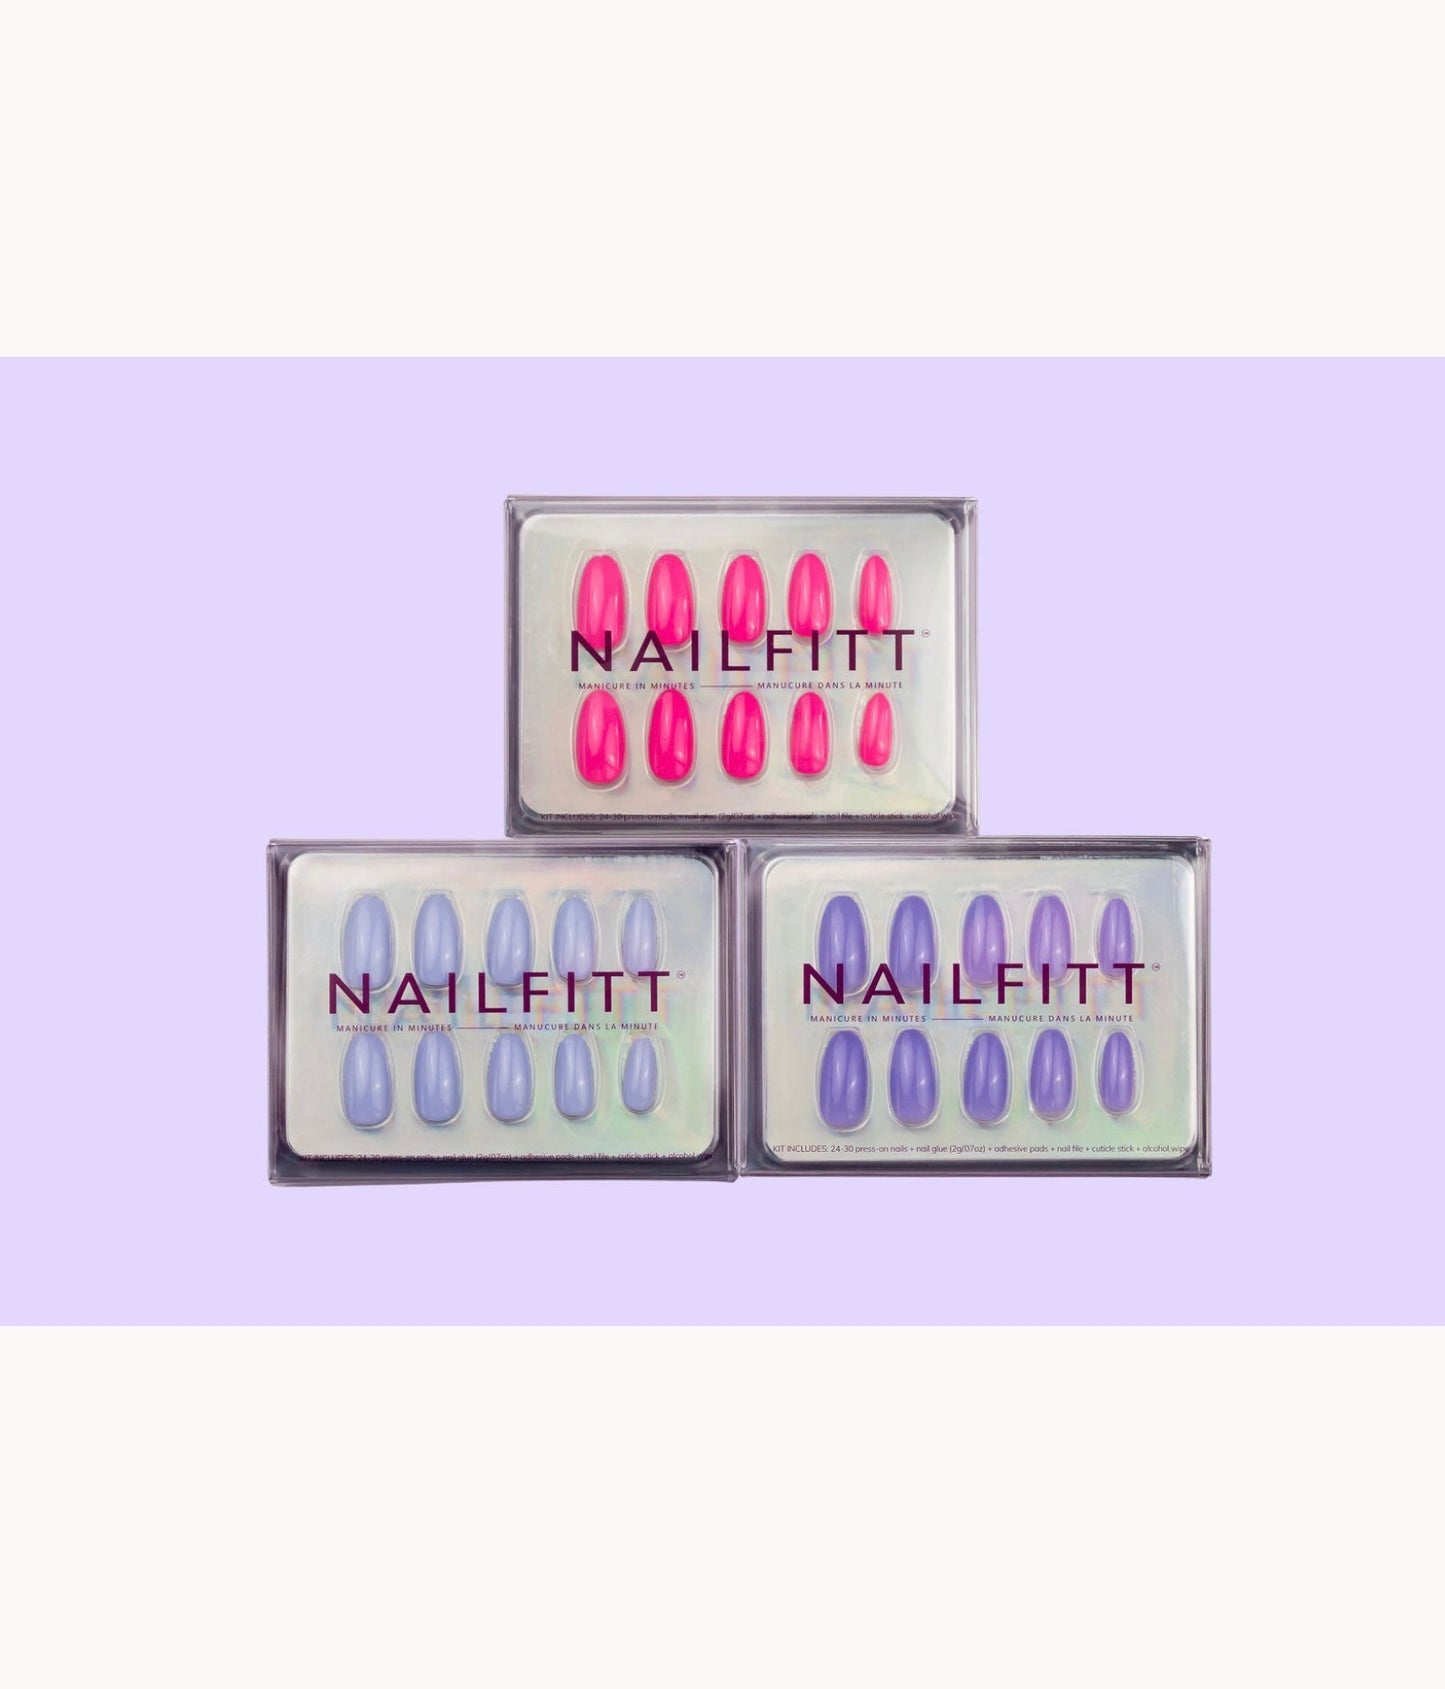 Nailfitt Mini Kits including trending colour Lavender Haze